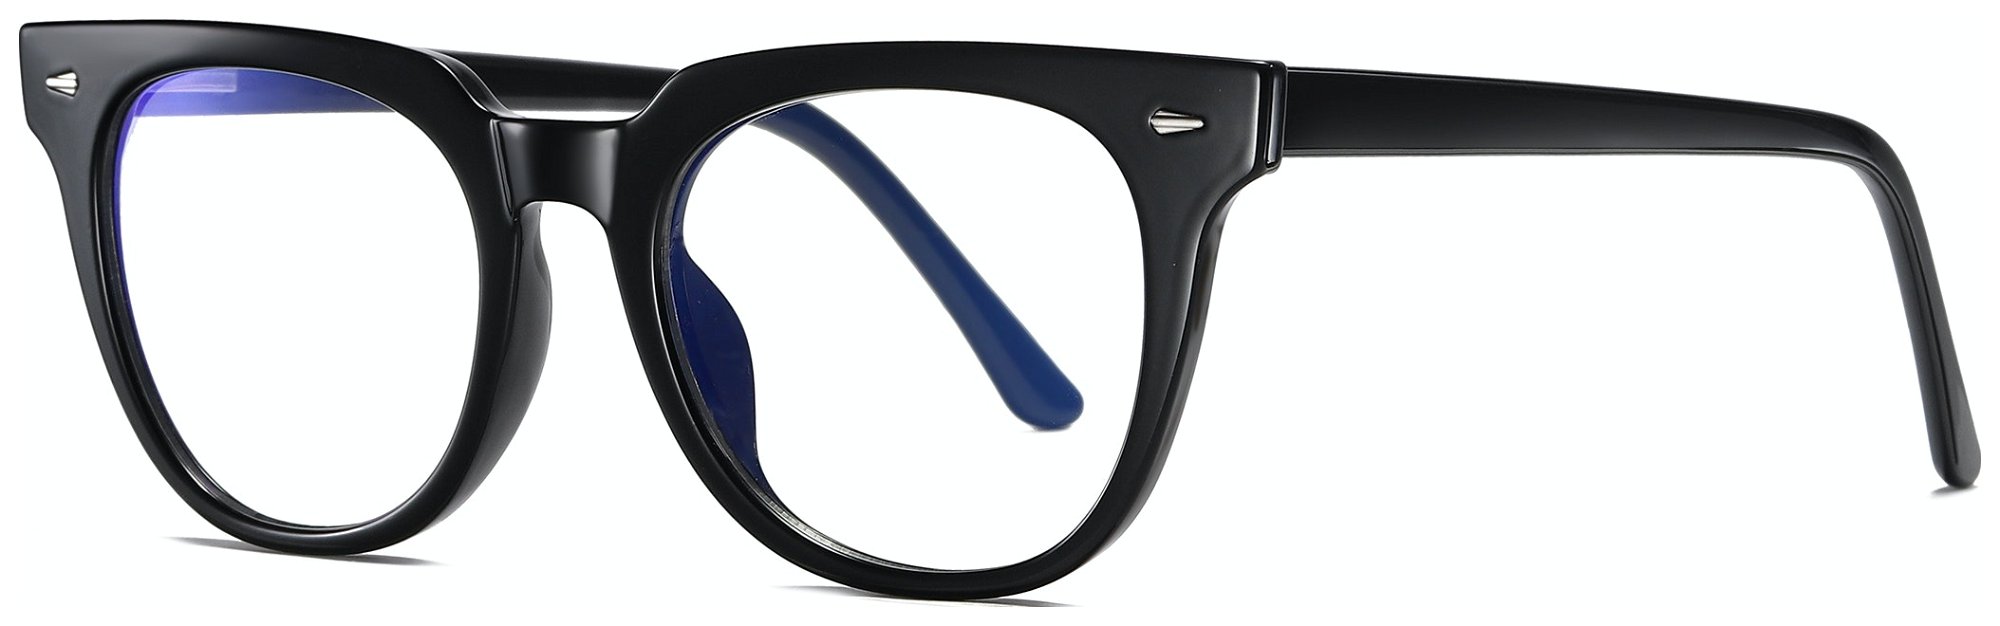 Regulær bluelight briller til kvinder, Crafter by Kaleu (H: 5 cm. x B: 2 cm. x L: 13,8 cm., Sort)